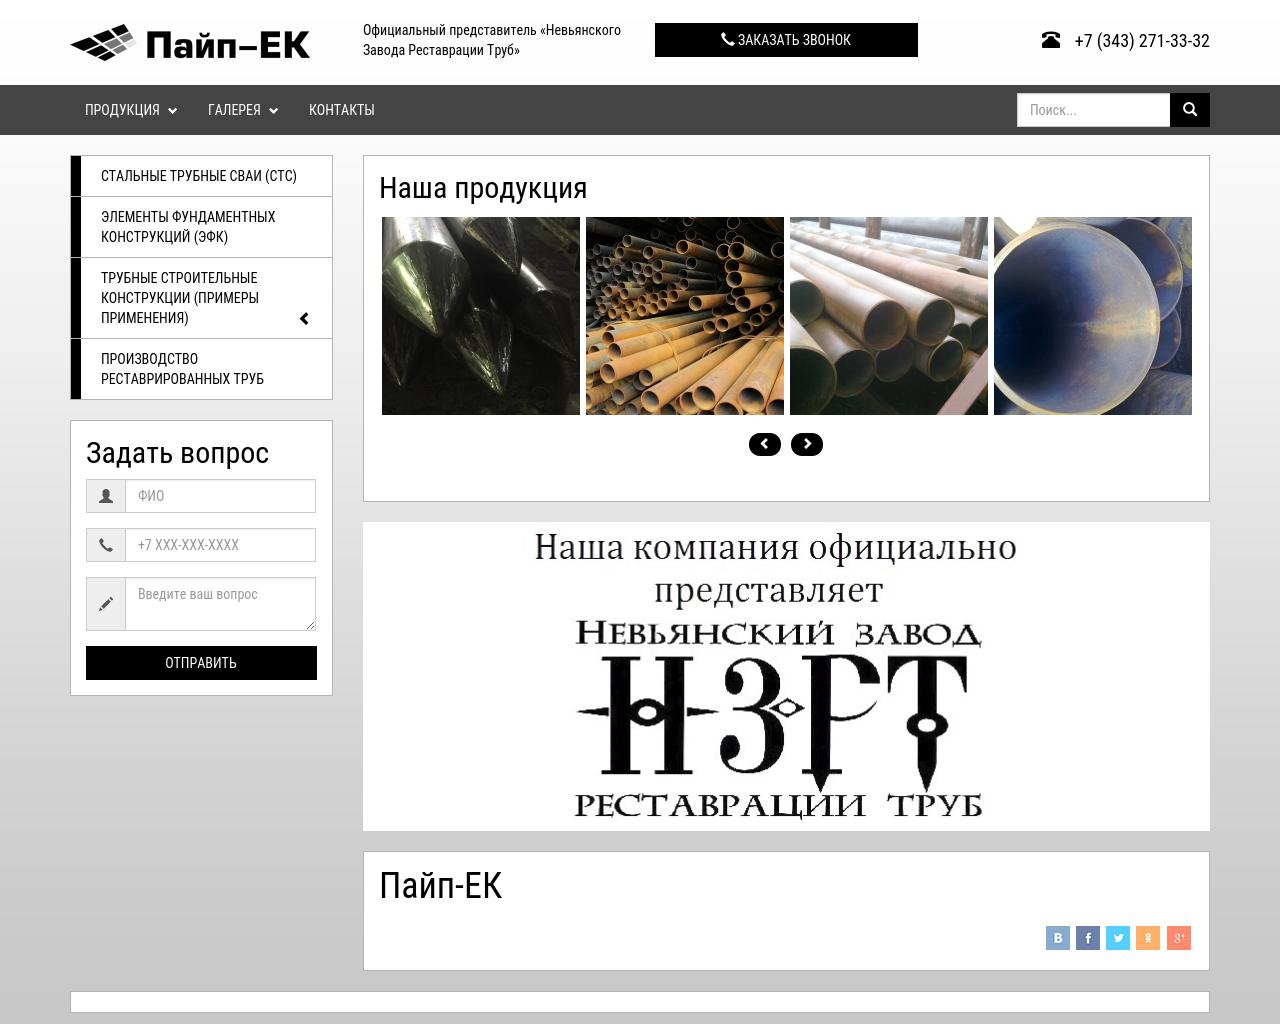 Изображение сайта pipe-ek.ru в разрешении 1280x1024